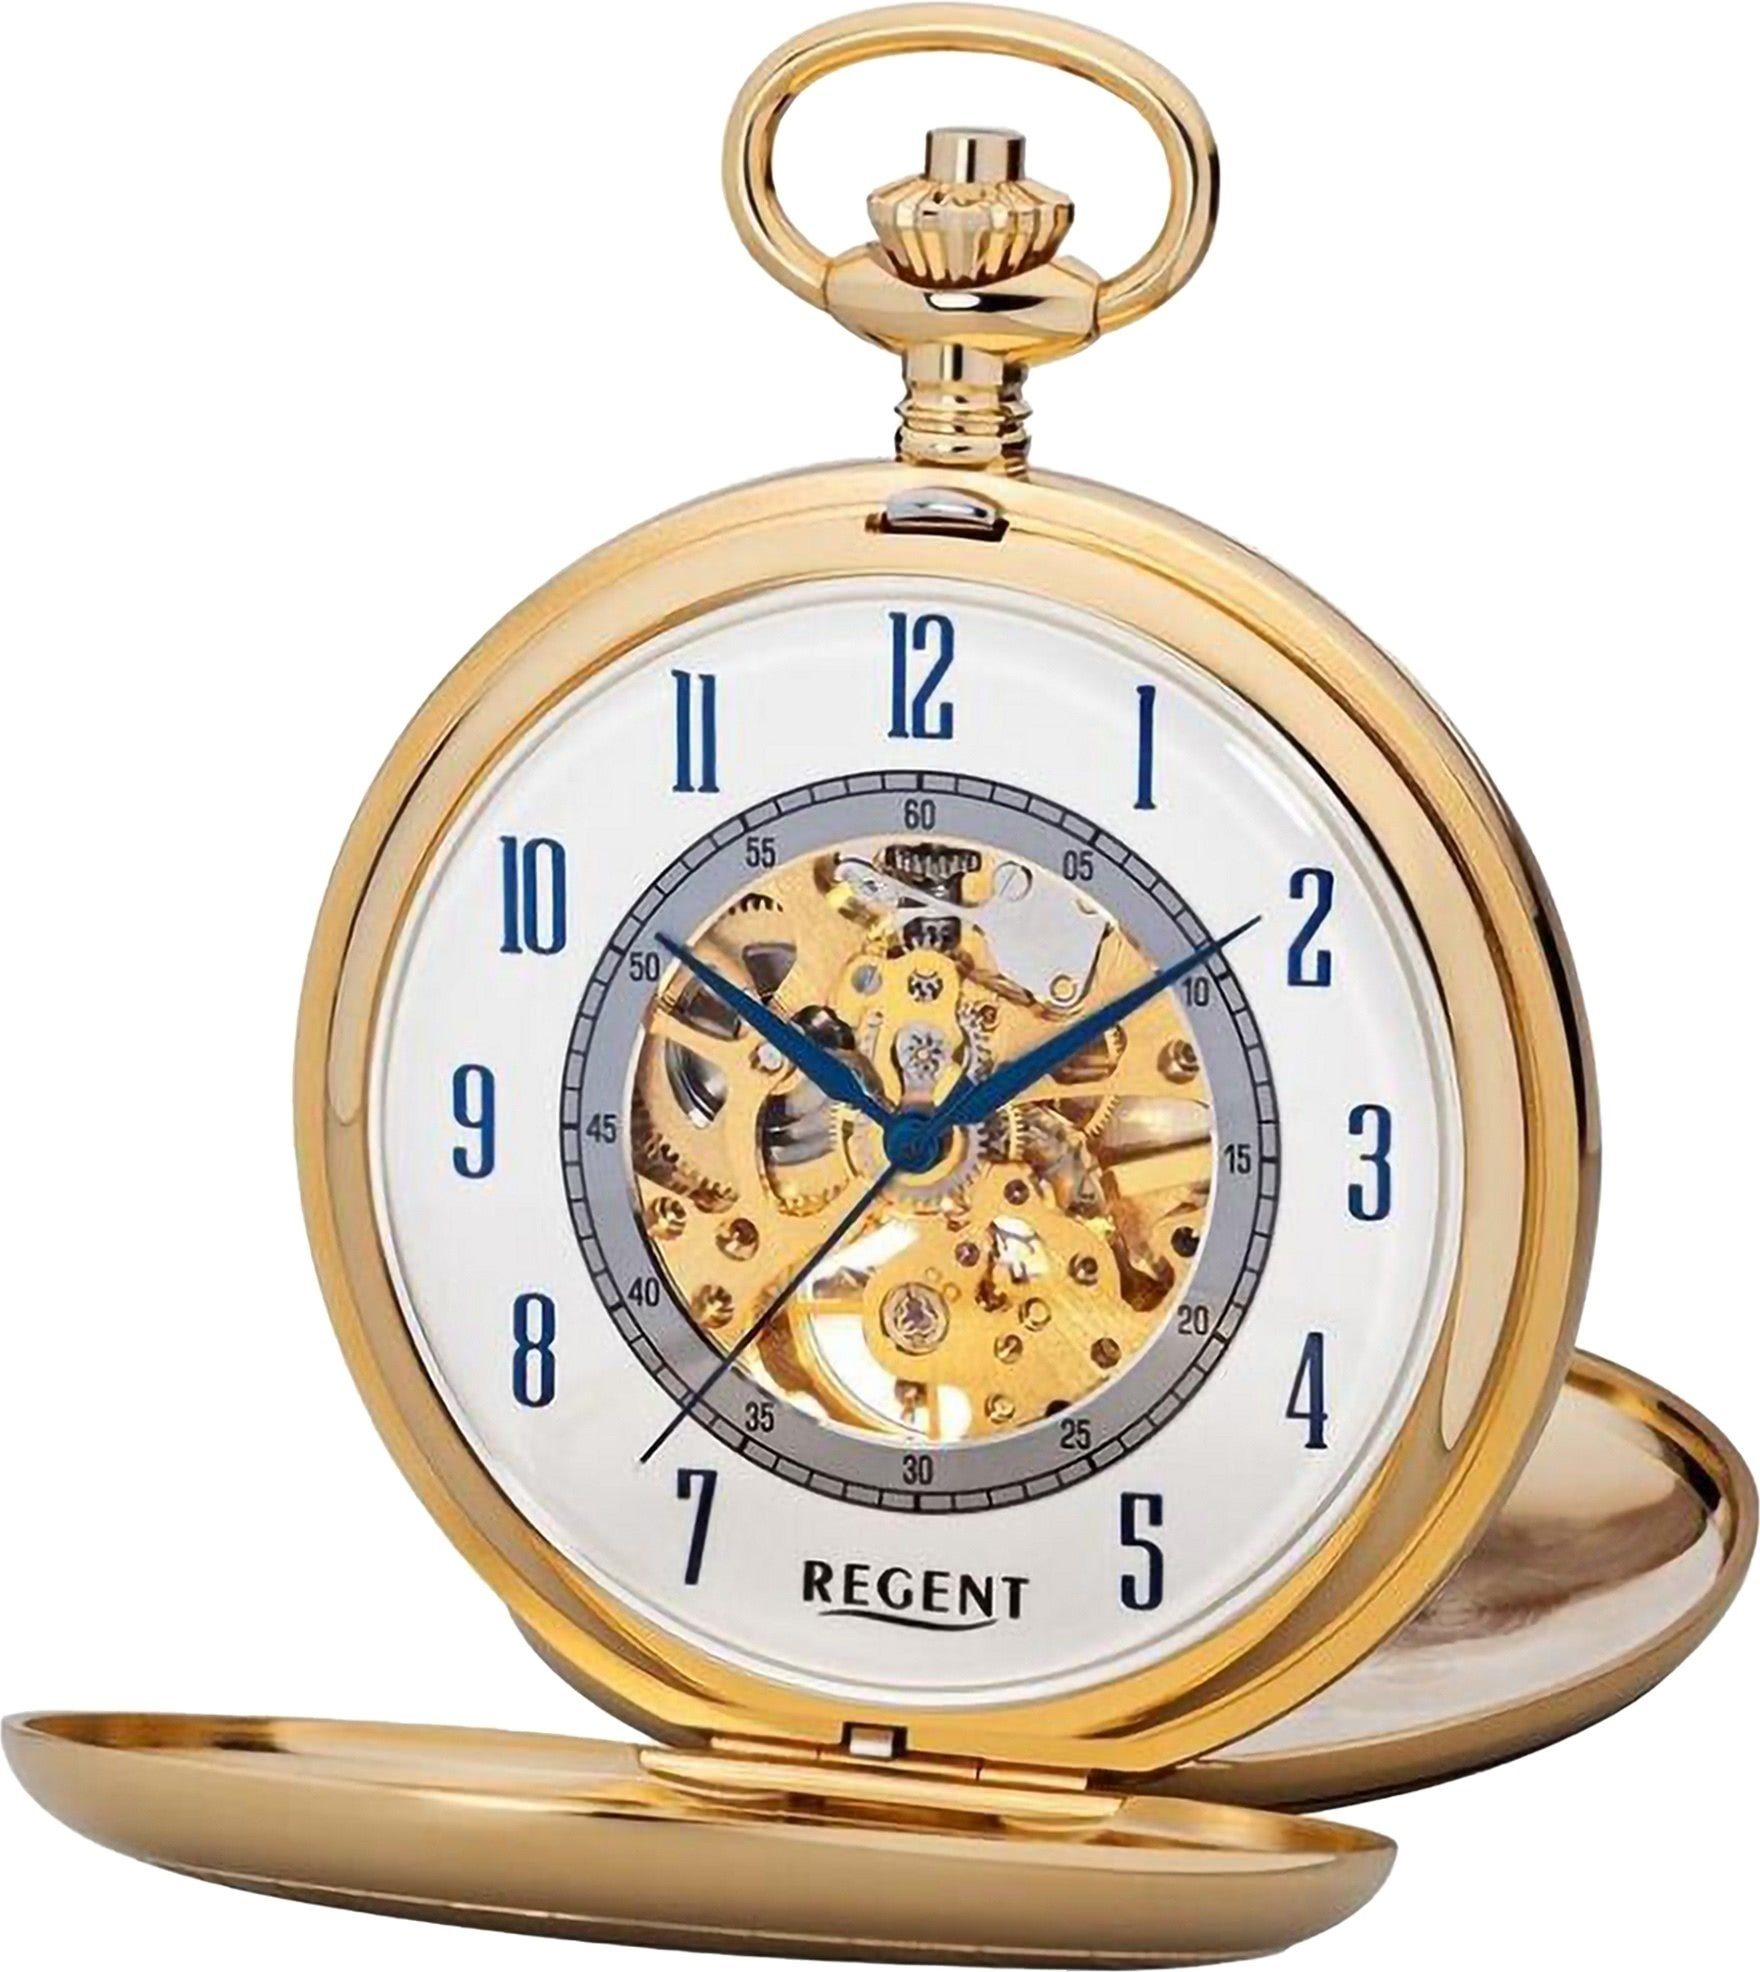 Taschenuhr extra gold (ca. Herren Taschenuhr Herren Regent Gehäuse, 53mm), (Analoguhr), rund, Regent groß Taschenuhr Metall, Elegant Analog